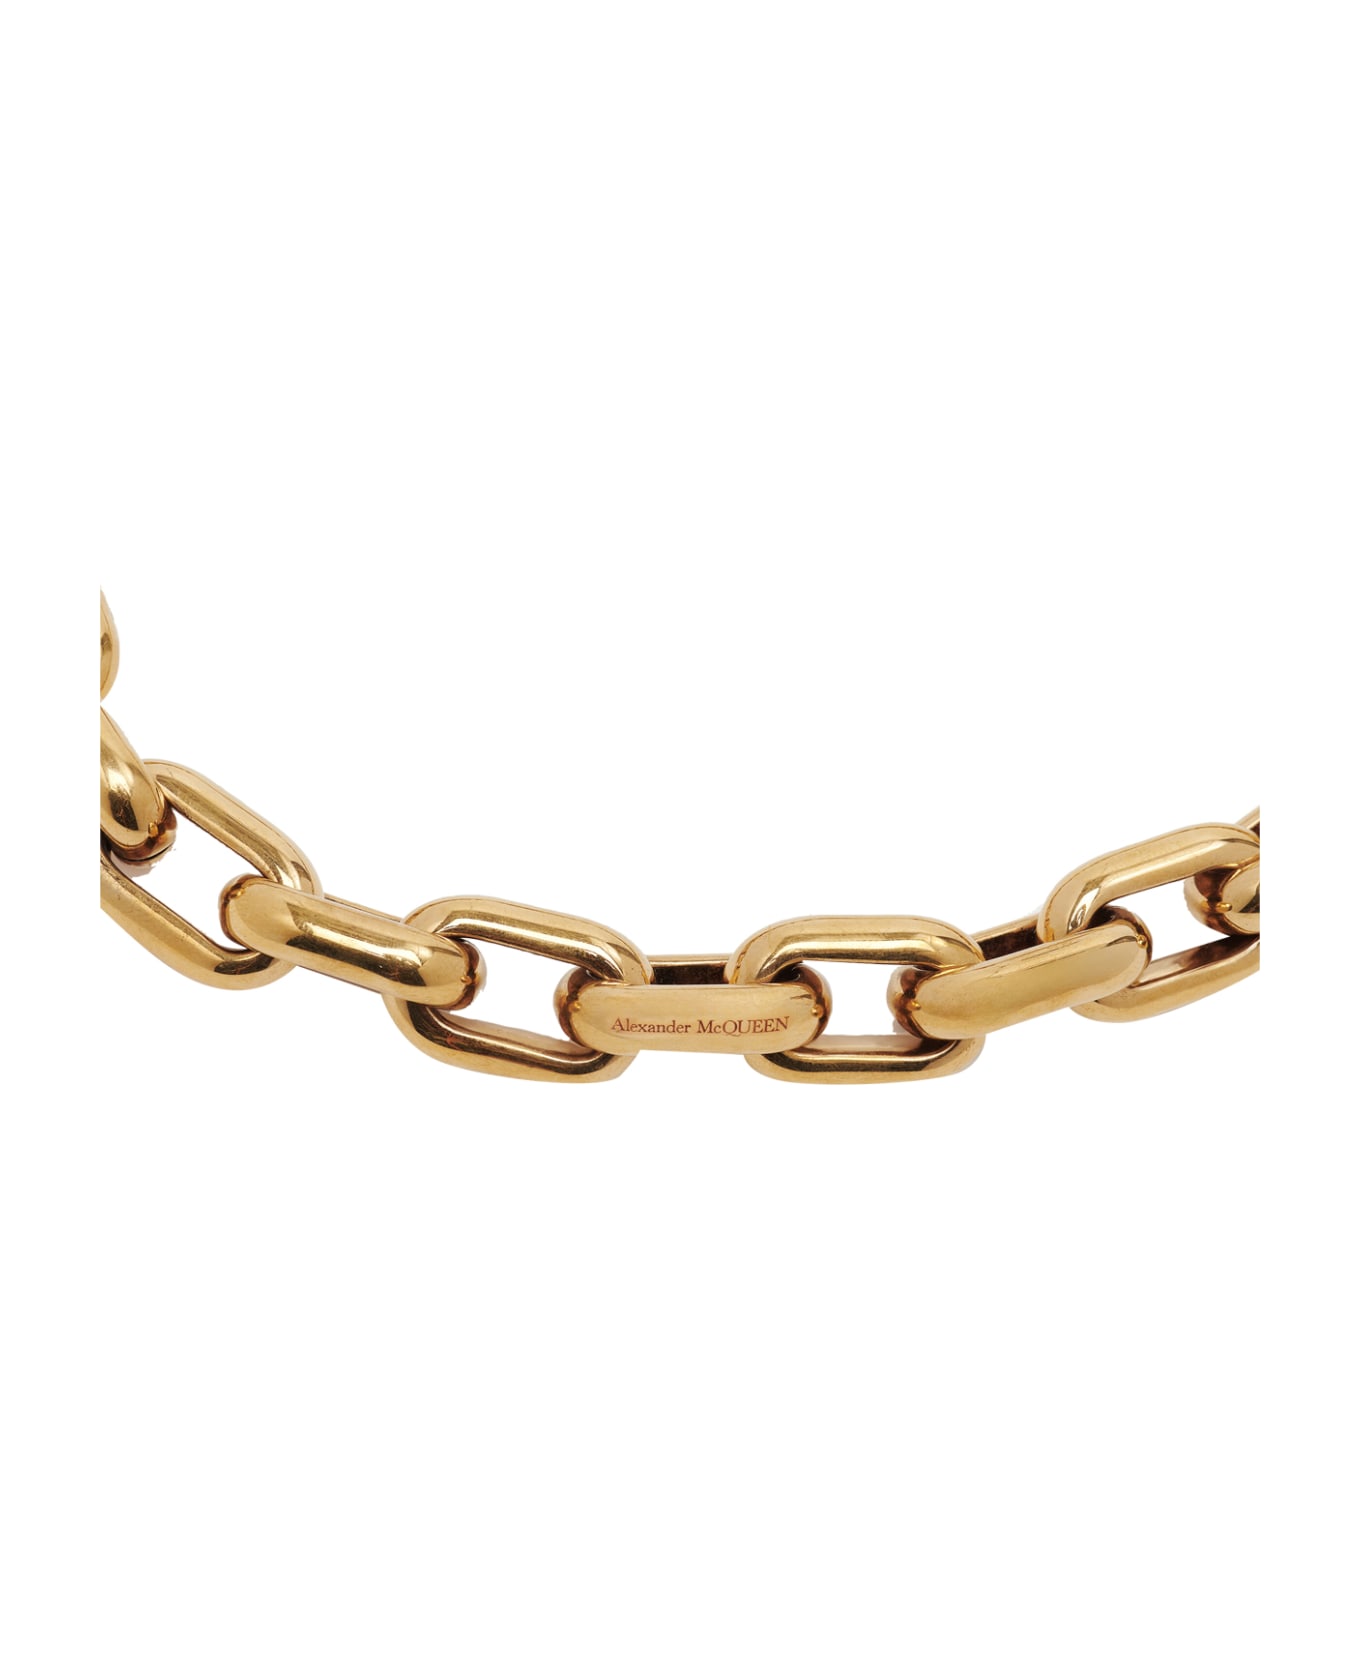 Alexander McQueen Peak Chain Necklace - Golden ネックレス